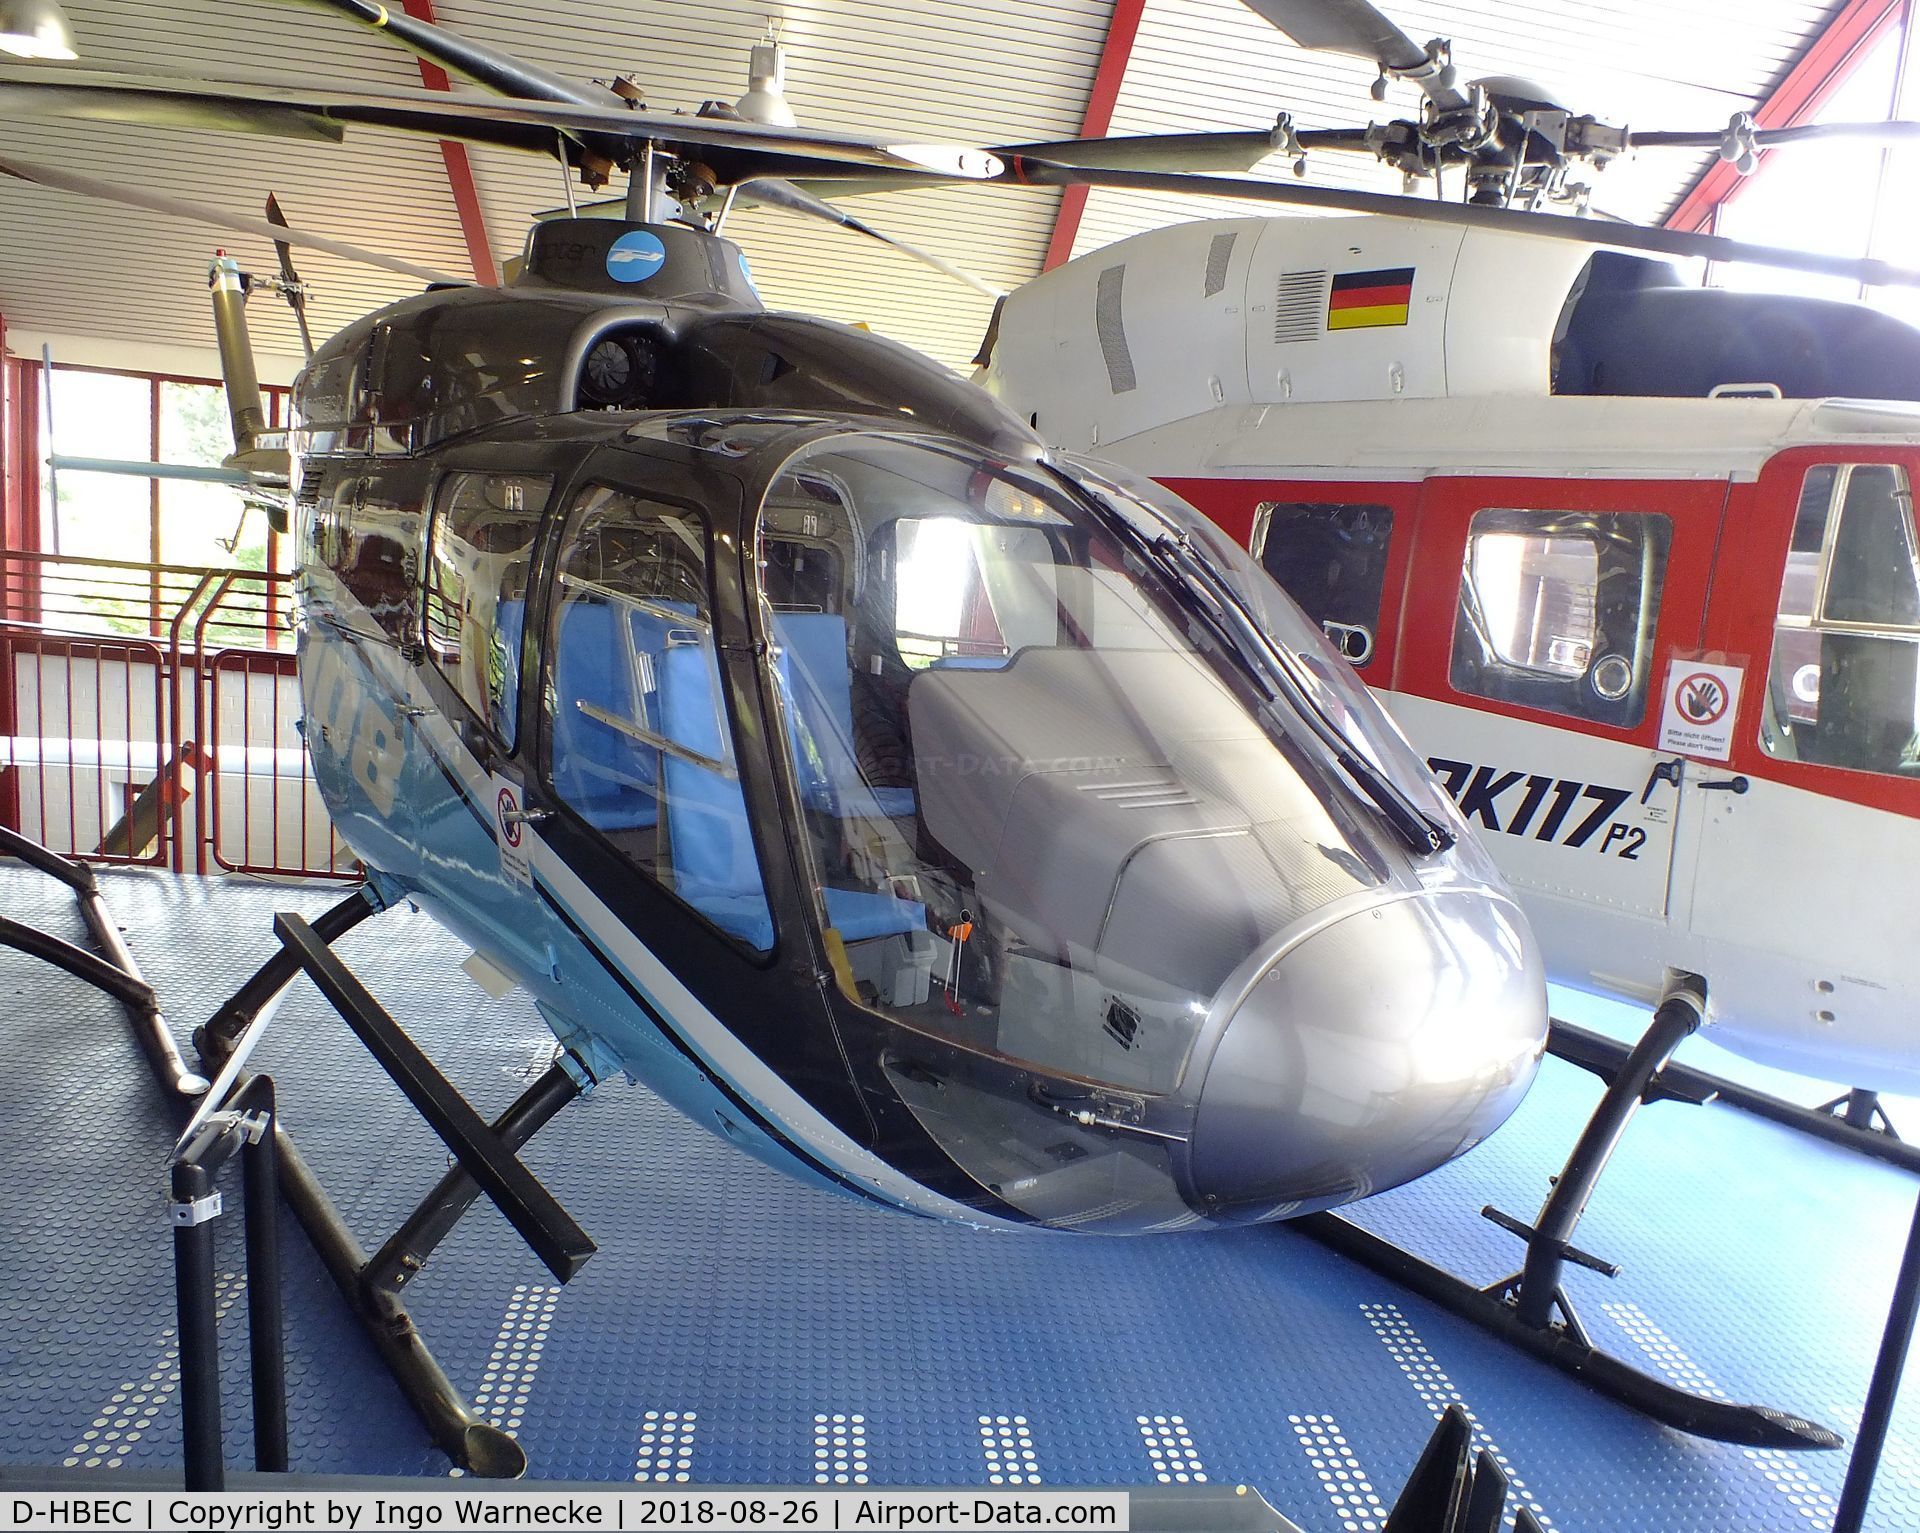 D-HBEC, 1988 MBB Bo 108 A1 C/N VT-002, MBB Bo 108 A1 at the Hubschraubermuseum (helicopter museum), Bückeburg